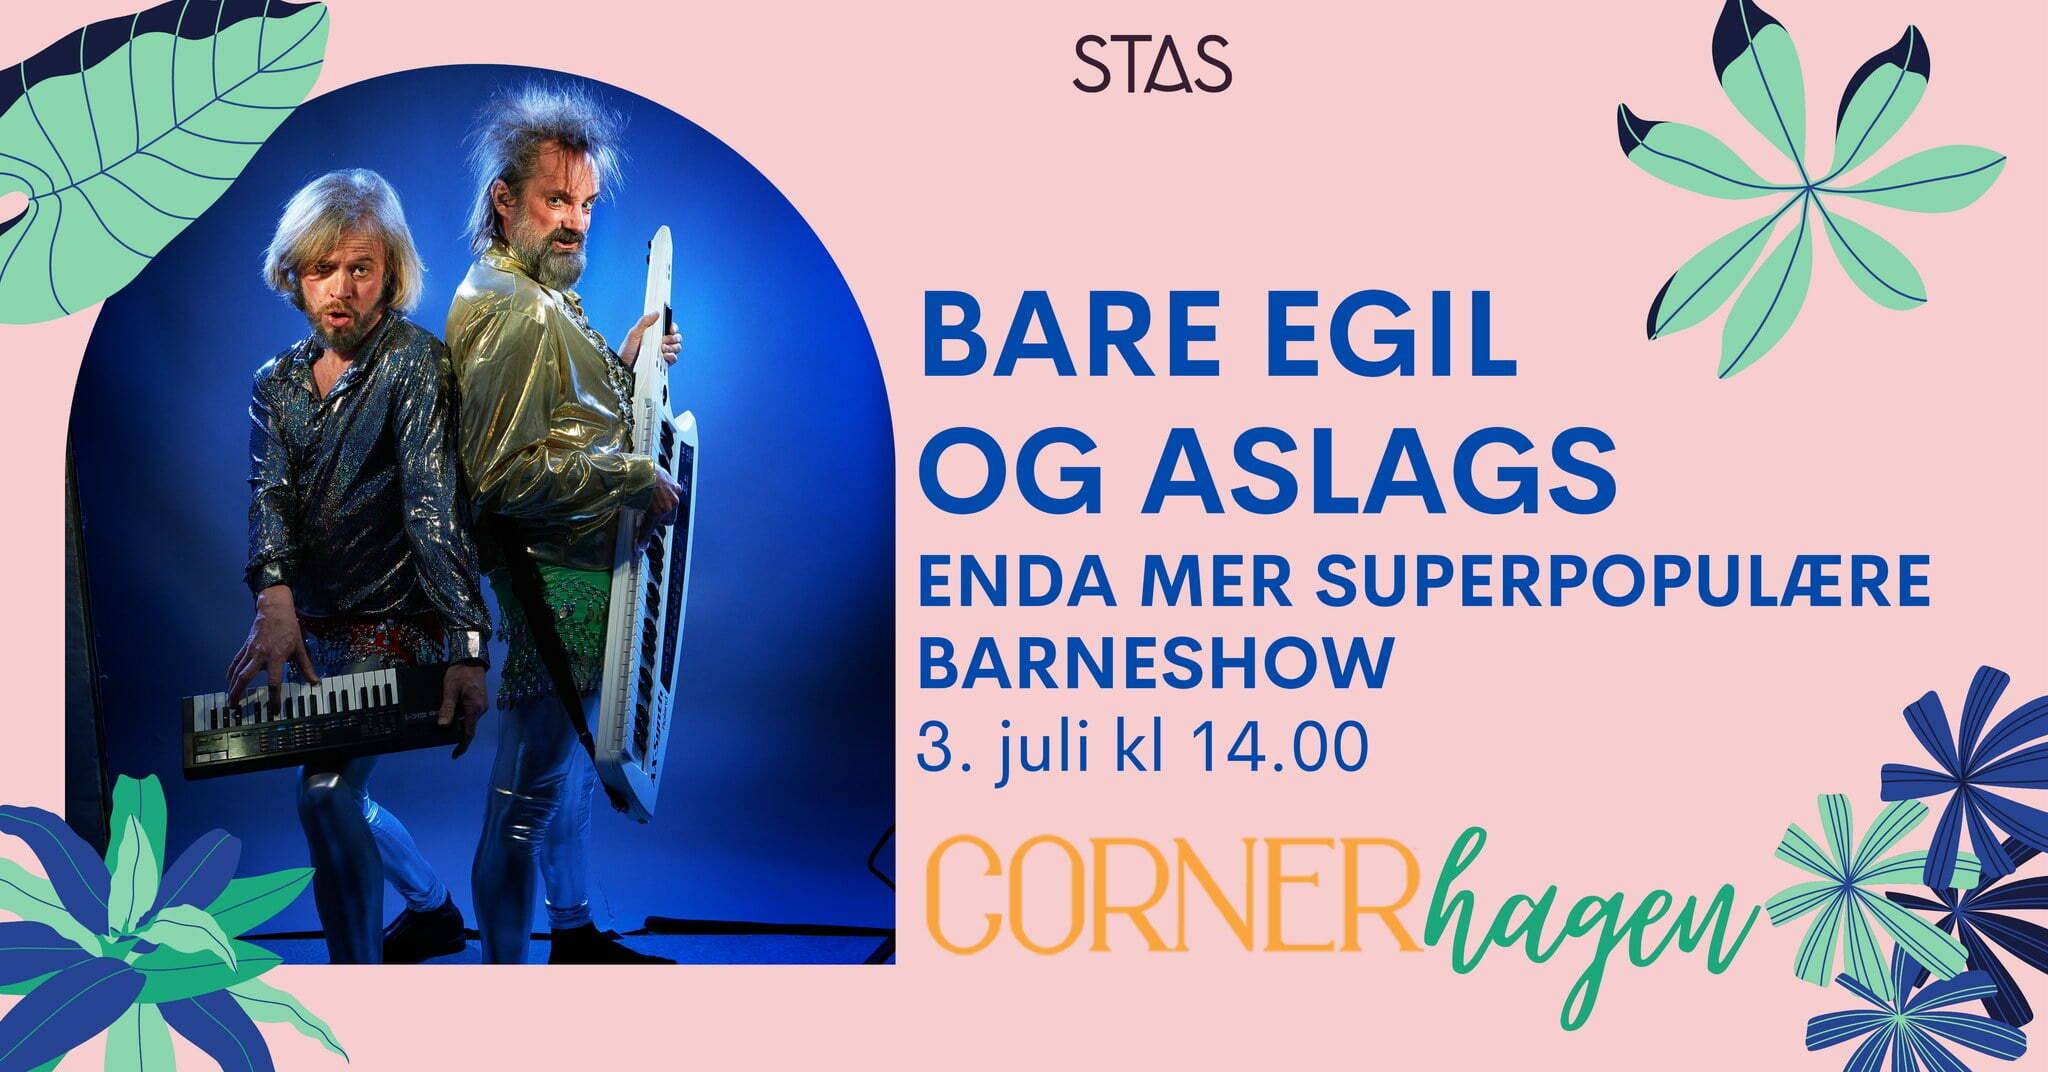 Bare Egil og Aslags enda mer superpopulære barneshow i Cornerhagen  - Stas Artist 